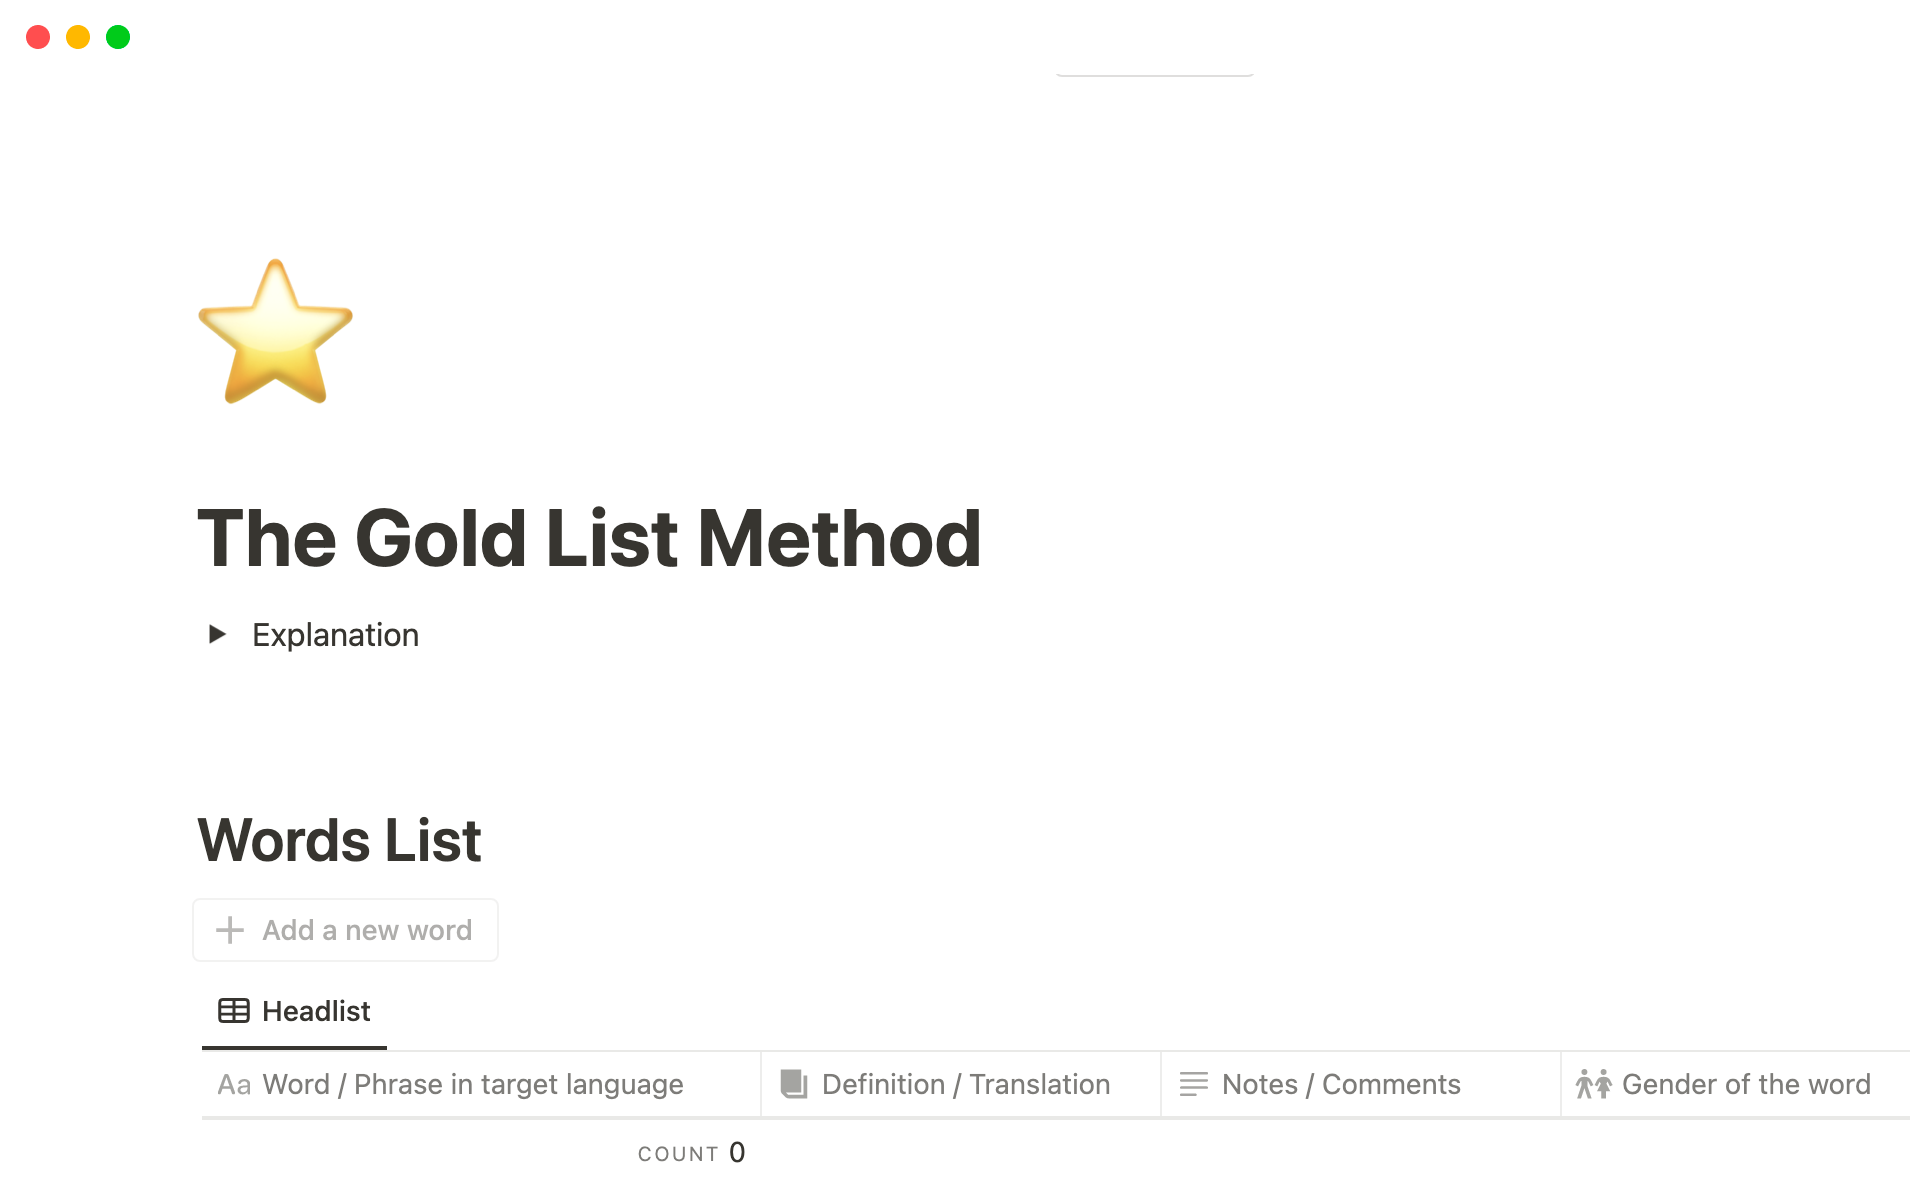 Uma prévia do modelo para The Gold List Method For Vocabulary Learning